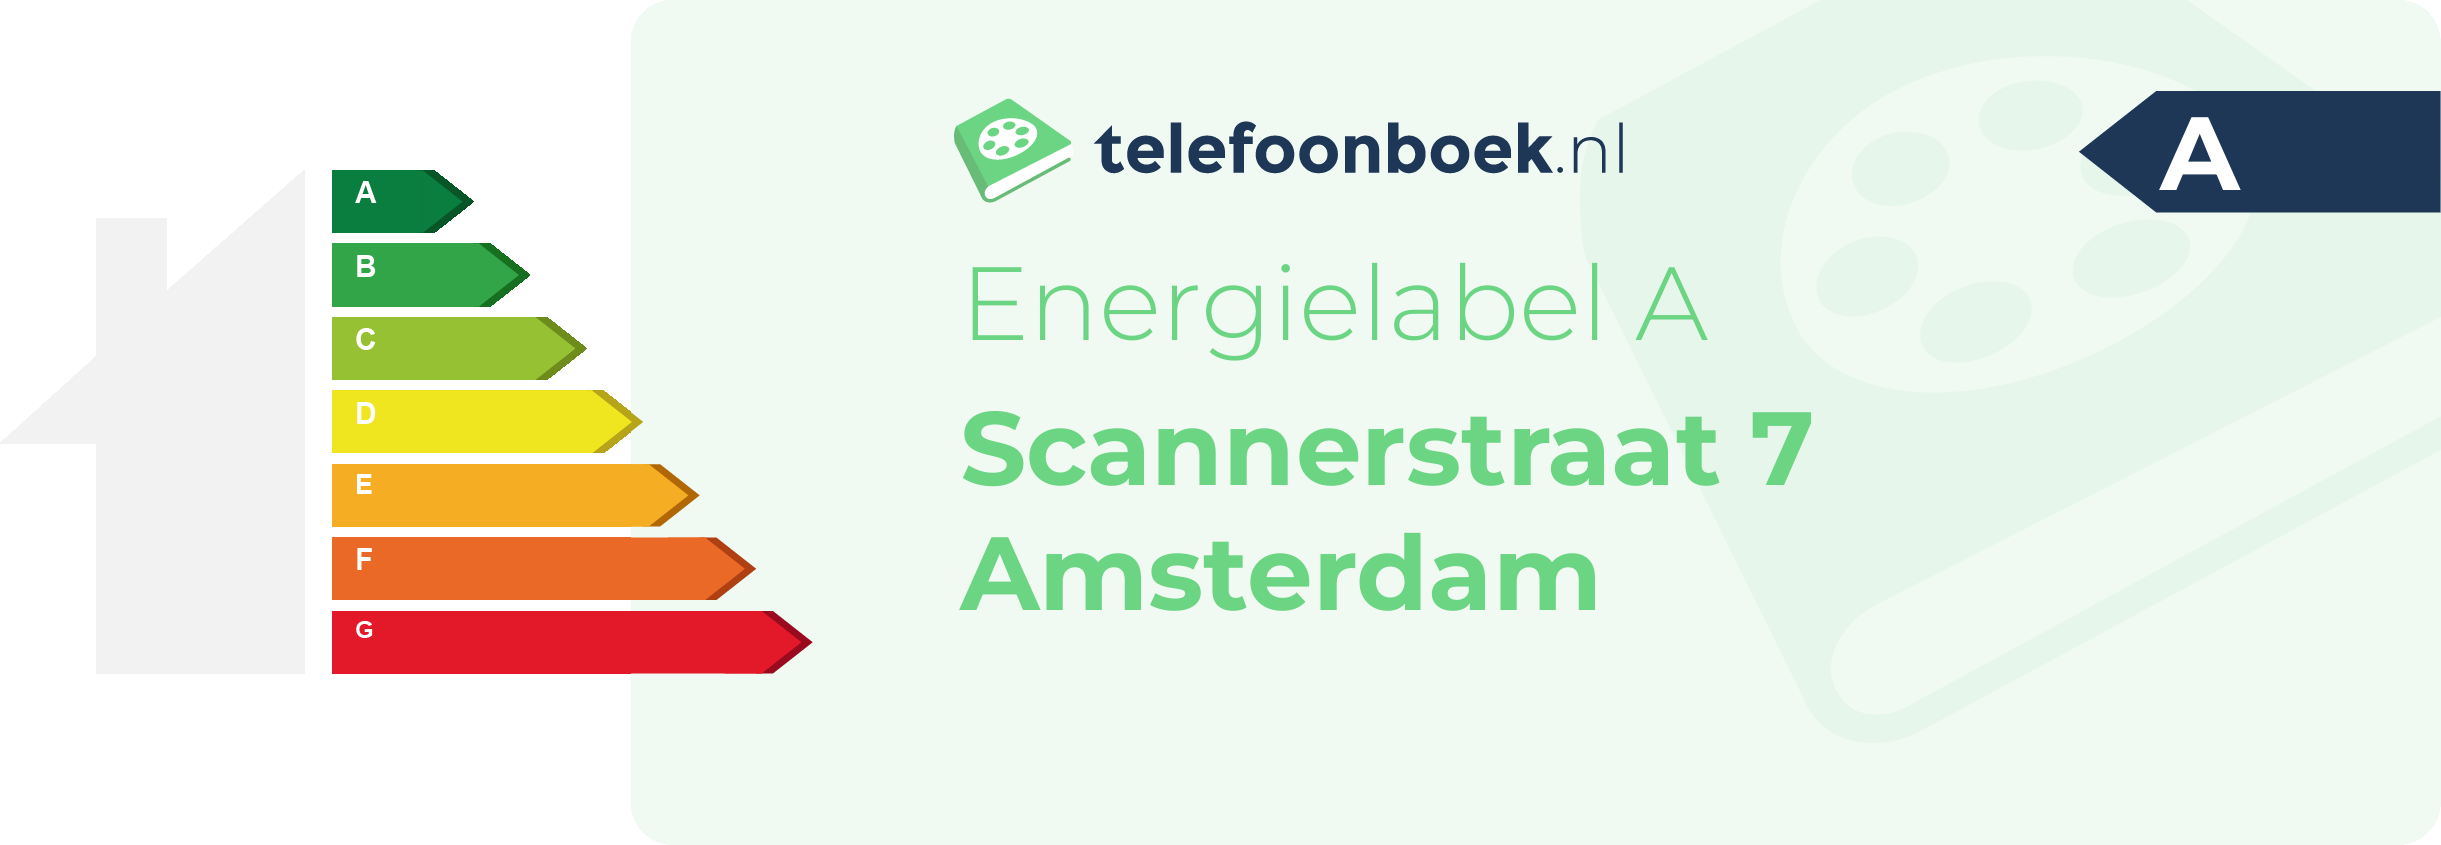 Energielabel Scannerstraat 7 Amsterdam